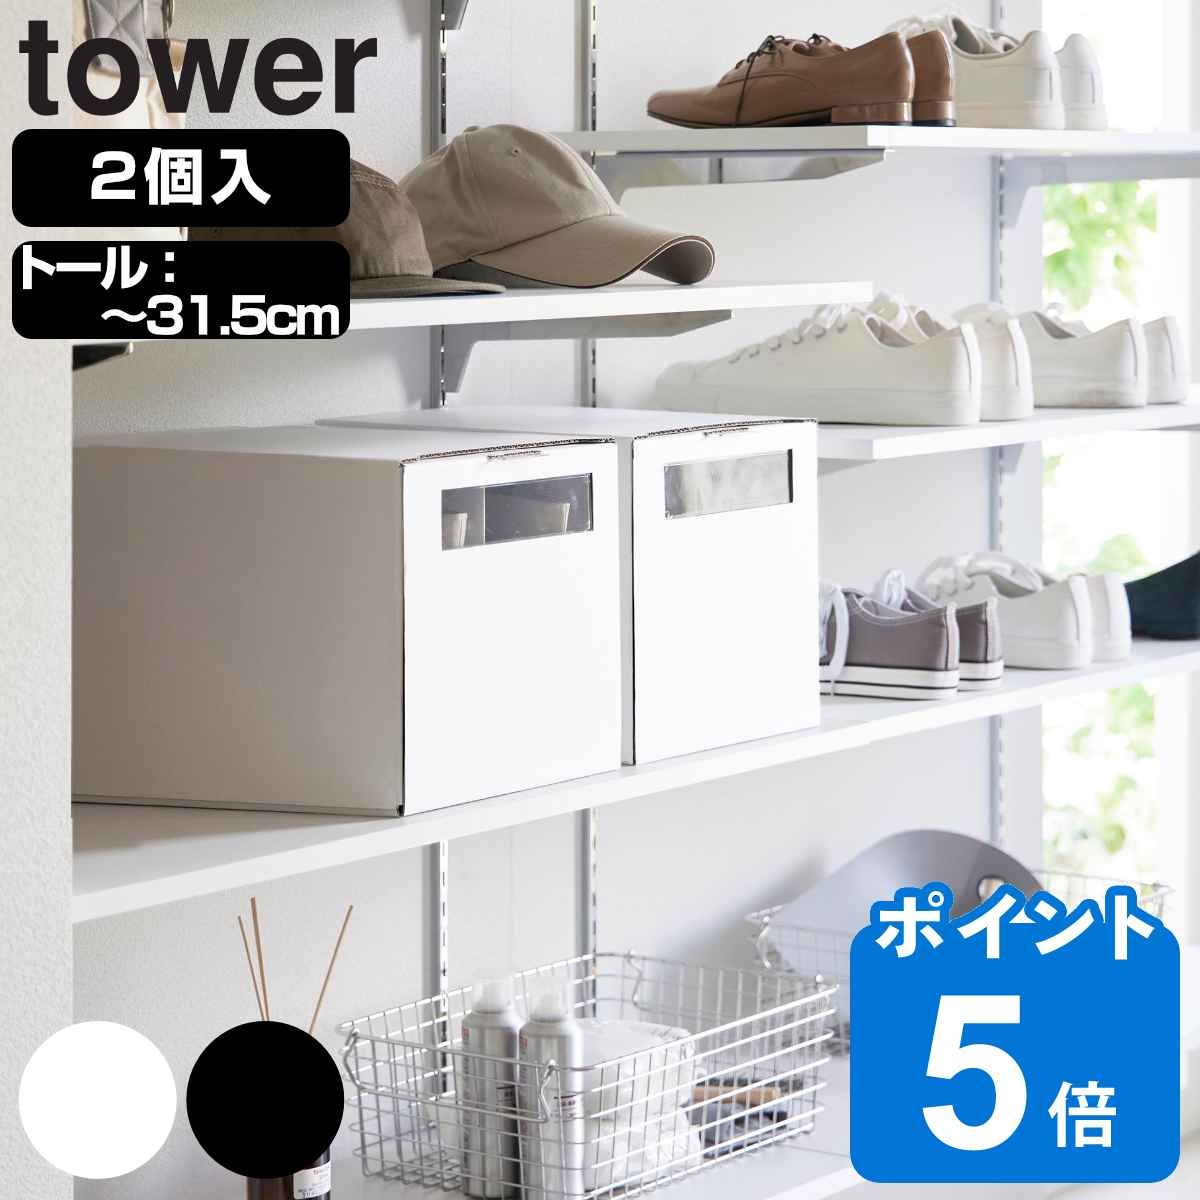 山崎実業 tower 窓付きシューズボックス タワー ２個組 トール